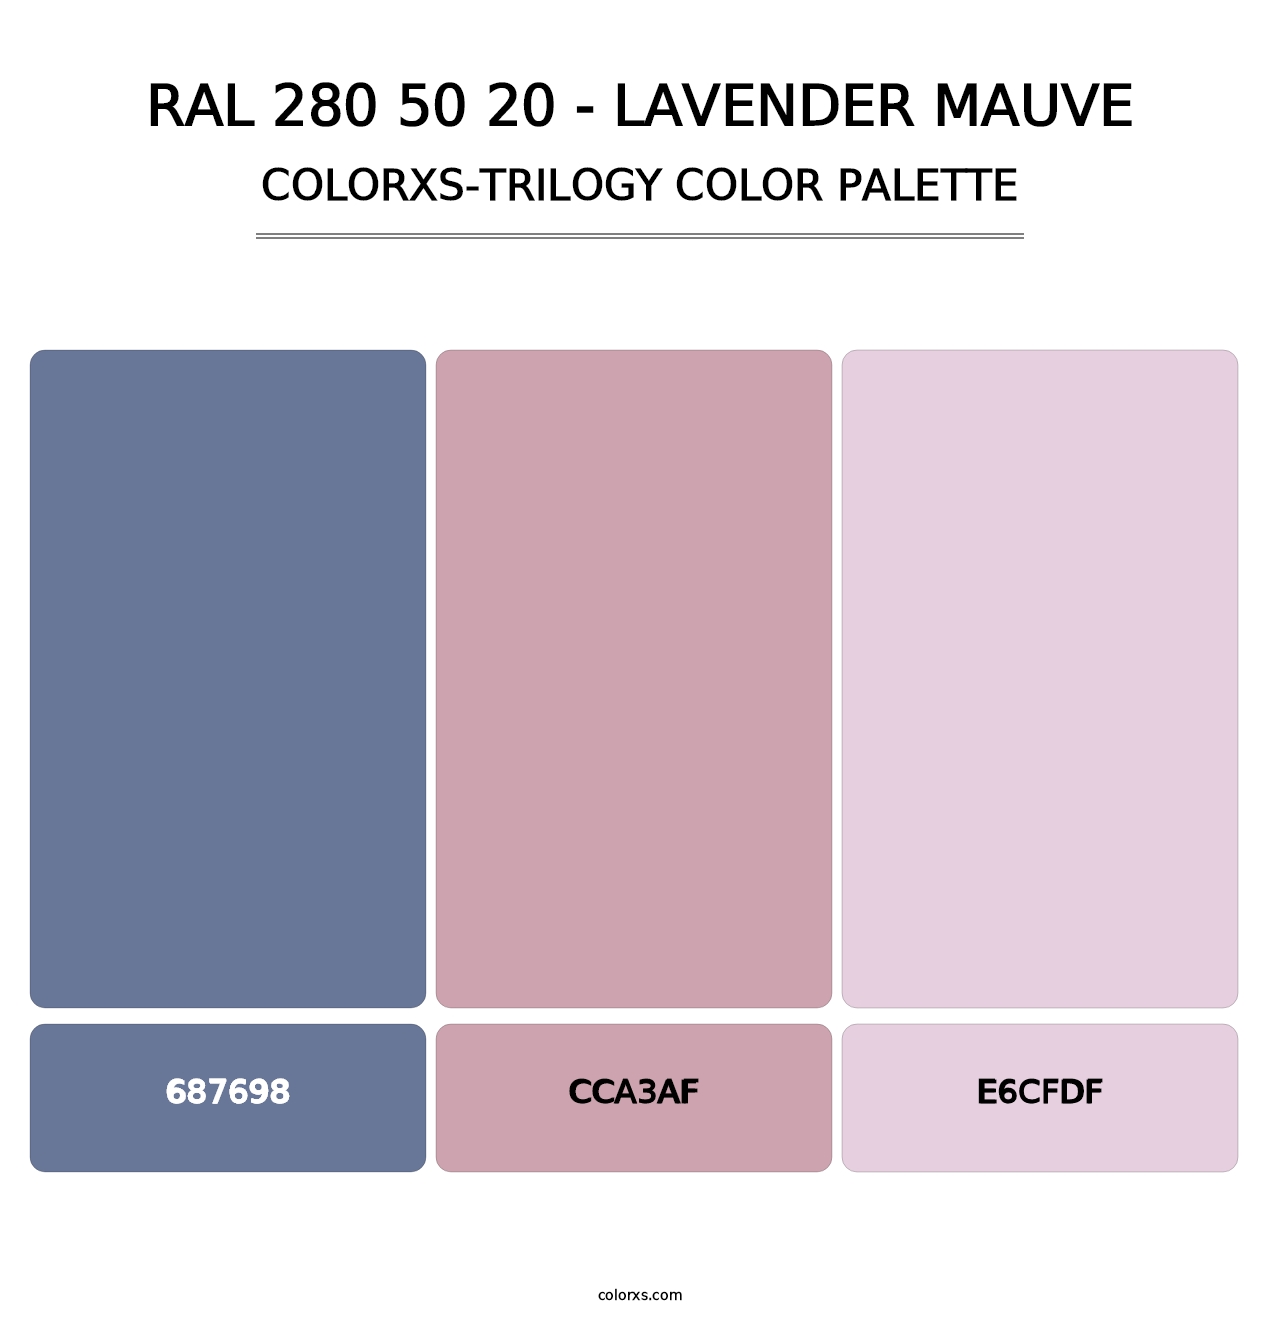 RAL 280 50 20 - Lavender Mauve - Colorxs Trilogy Palette